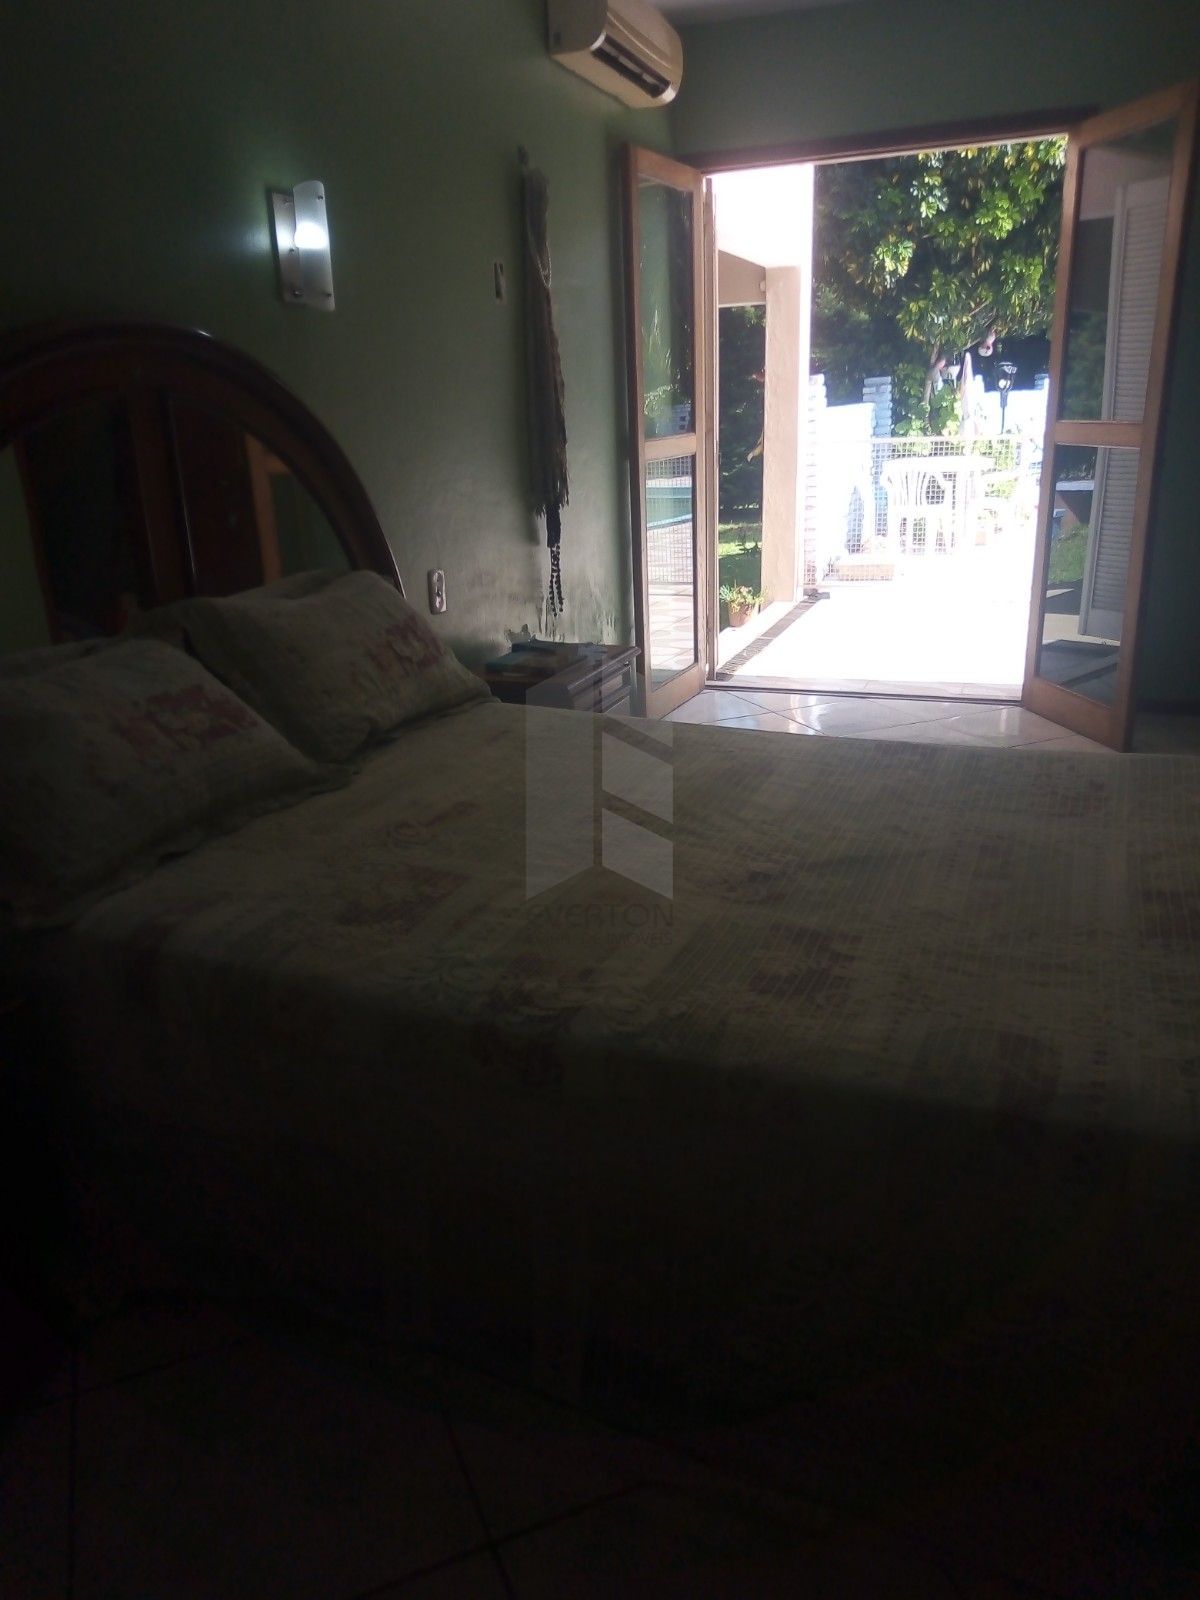 Chácara 4 dormitórios à venda Zona rural Santa Maria/RS